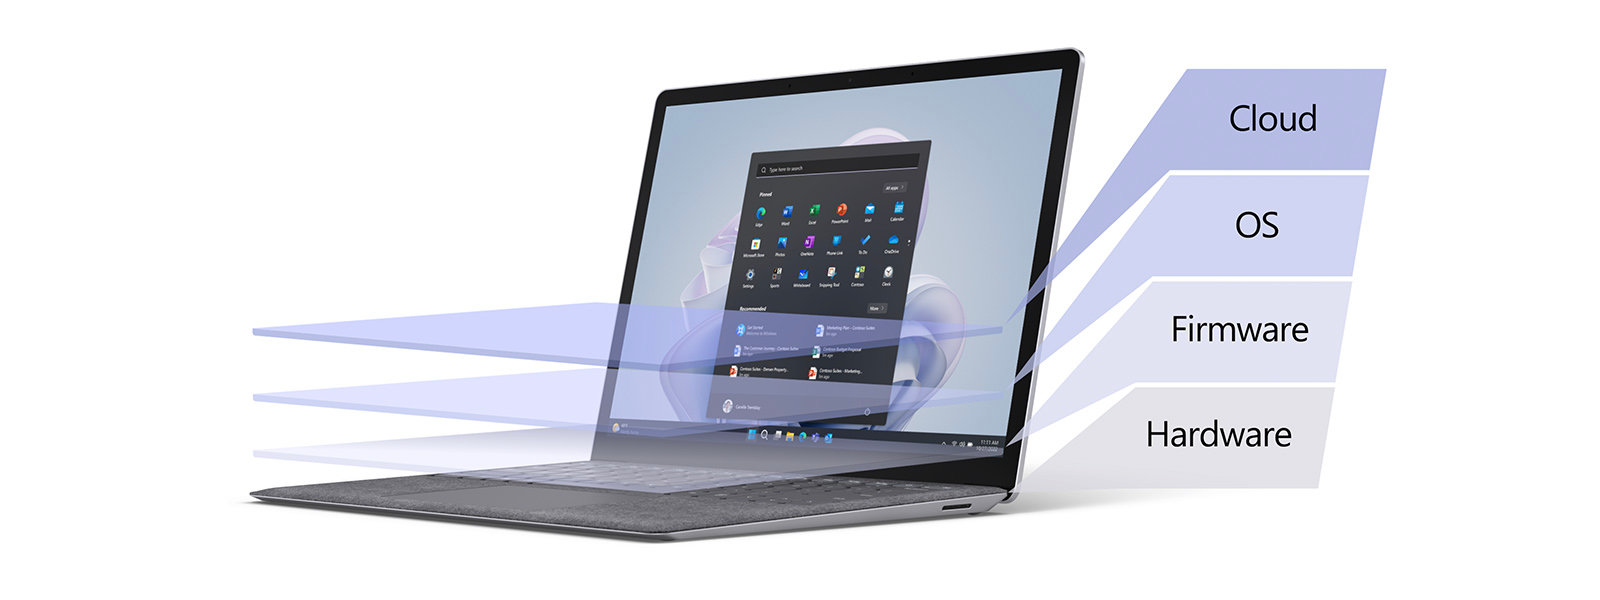 Surface laptop, felette a különböző biztonsági rétegeket jelképező színátmenetes réteggel